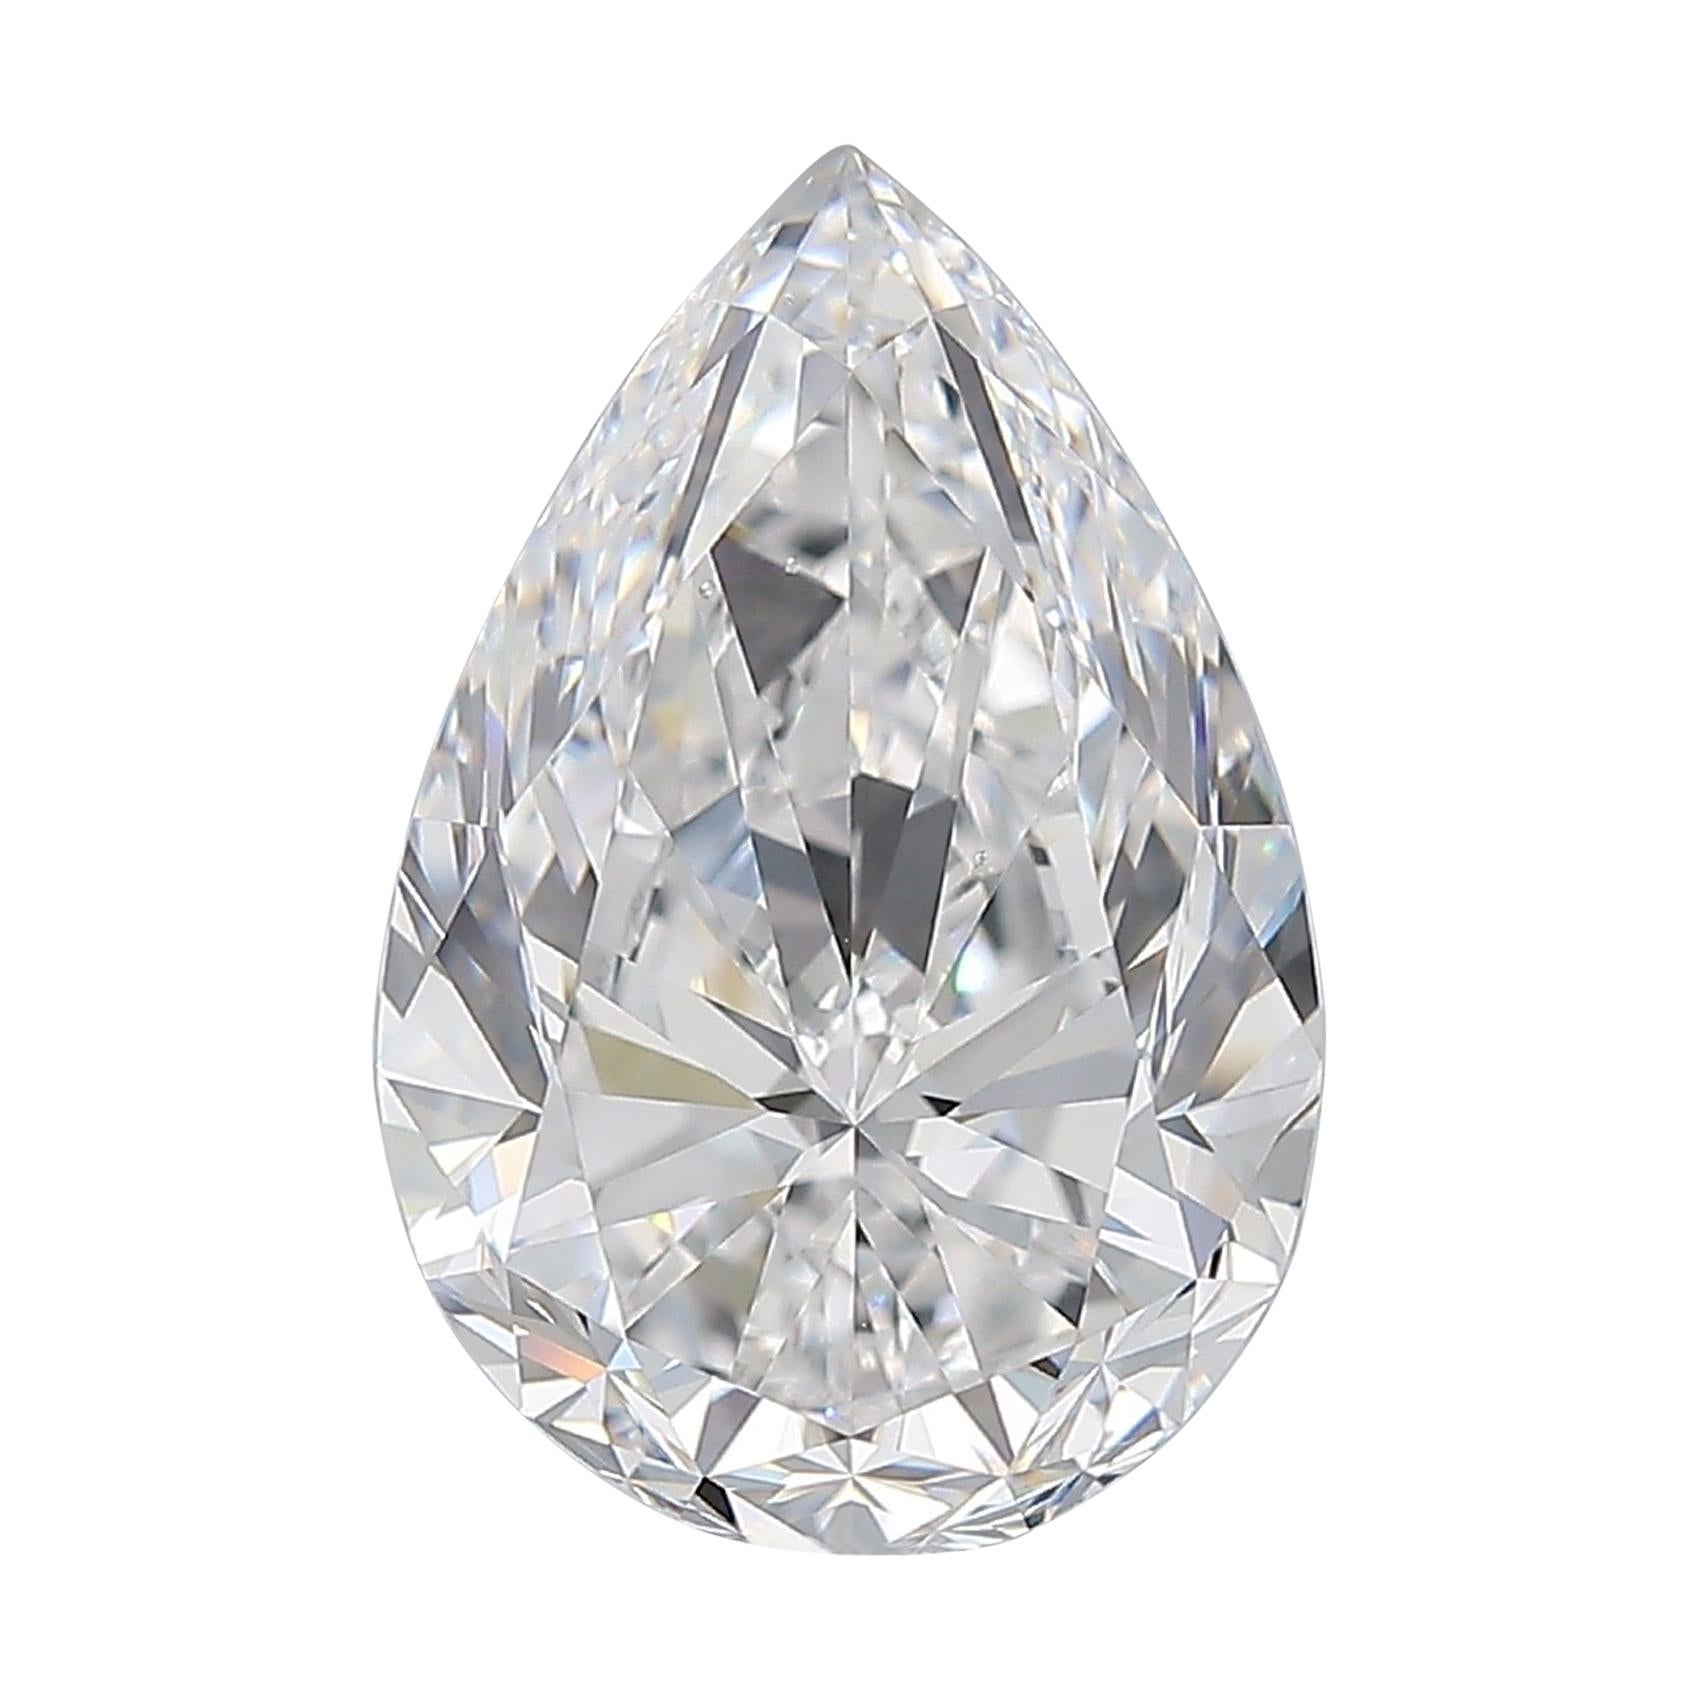 GIA Certified 5 Carat Pear Cut Diamond D Color VS2 Clarity